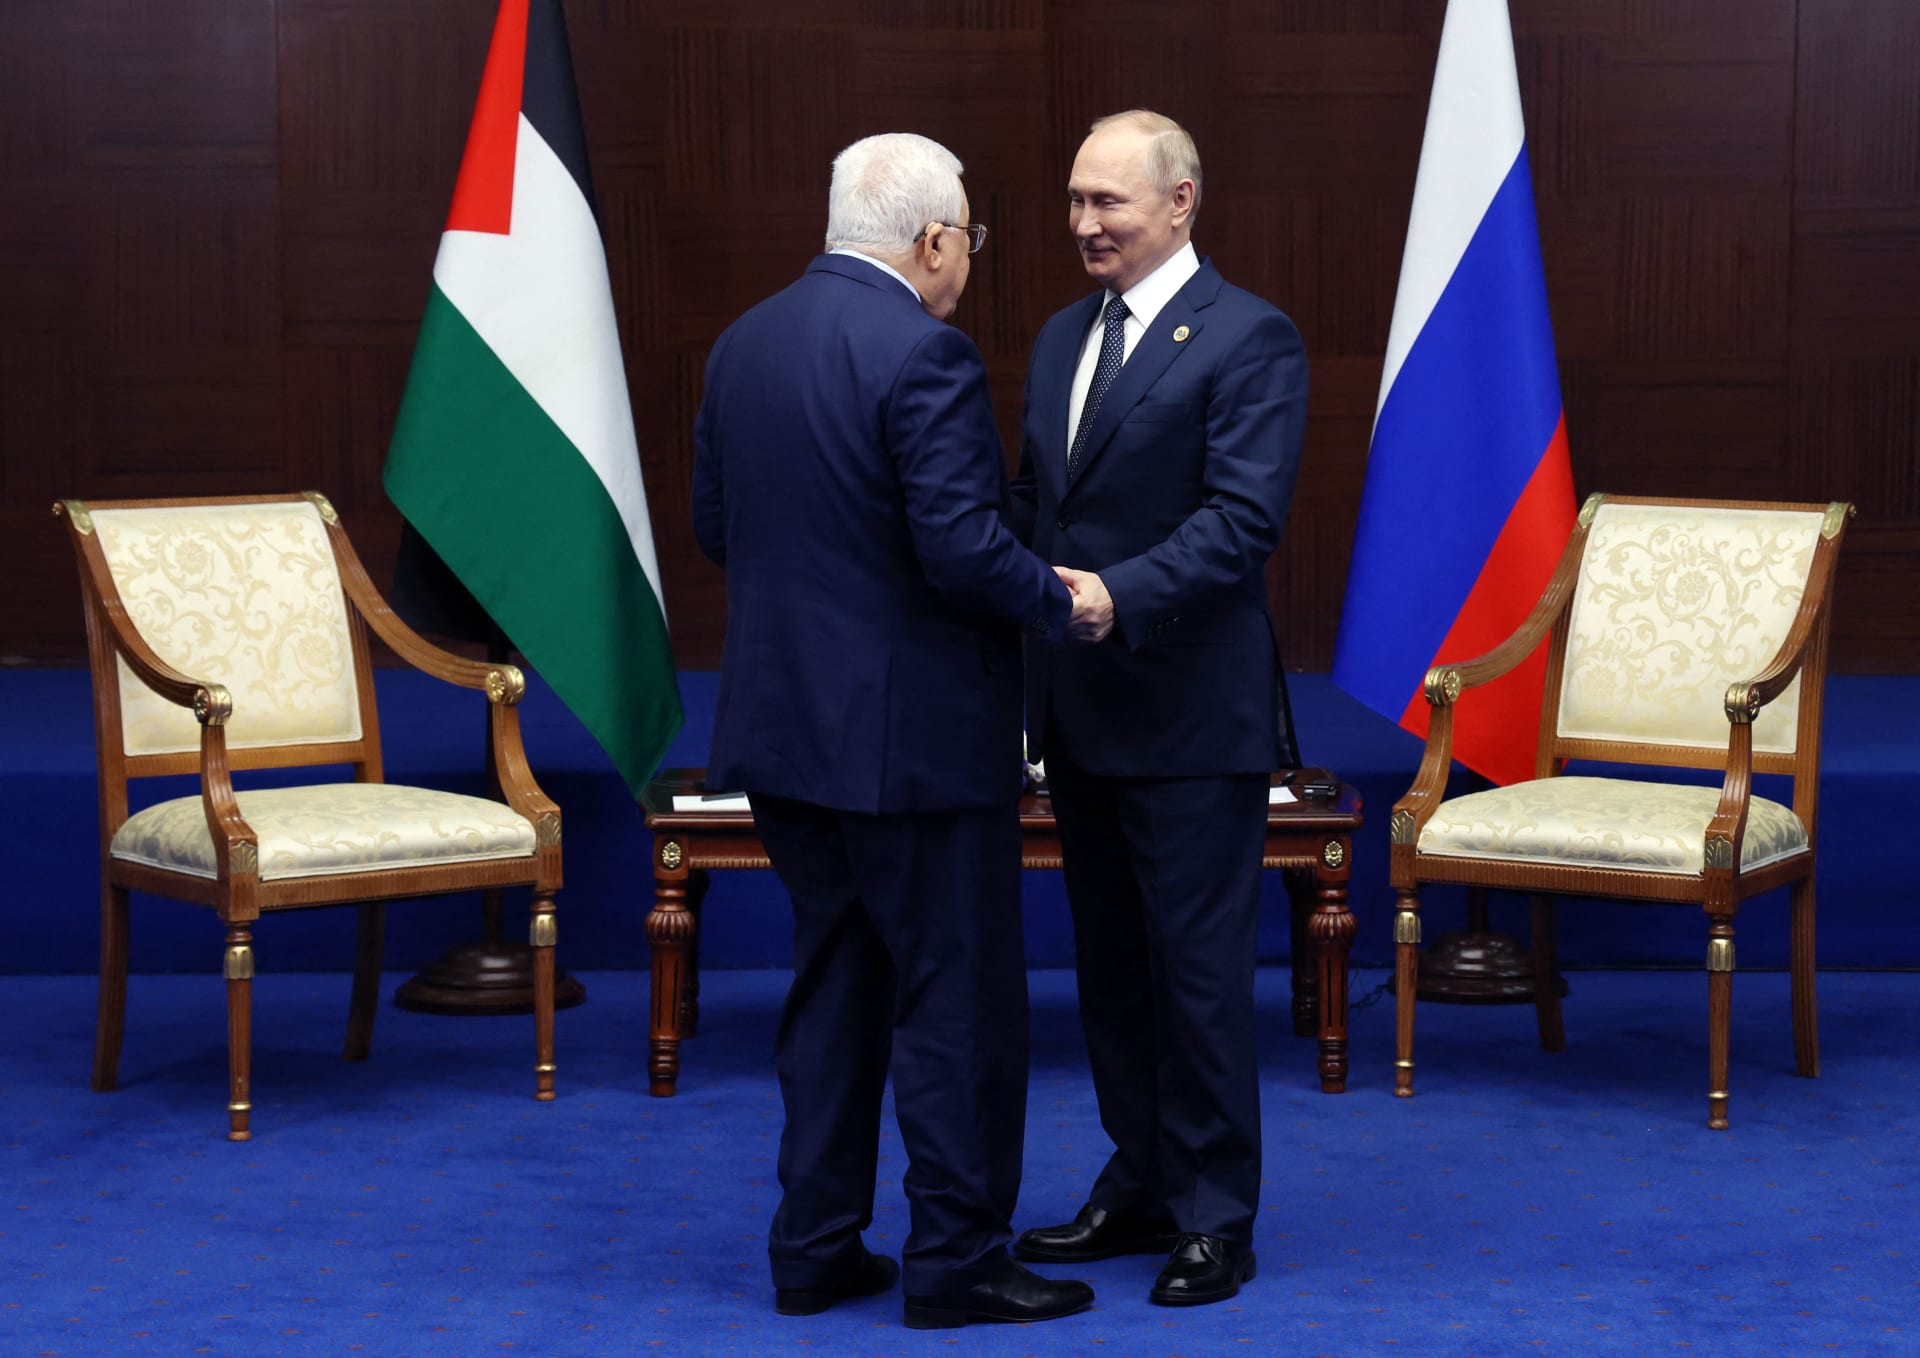 بوتين يستقبل محمود عباس بـ"الأحضان" في لقاء جمعهما في أستانا